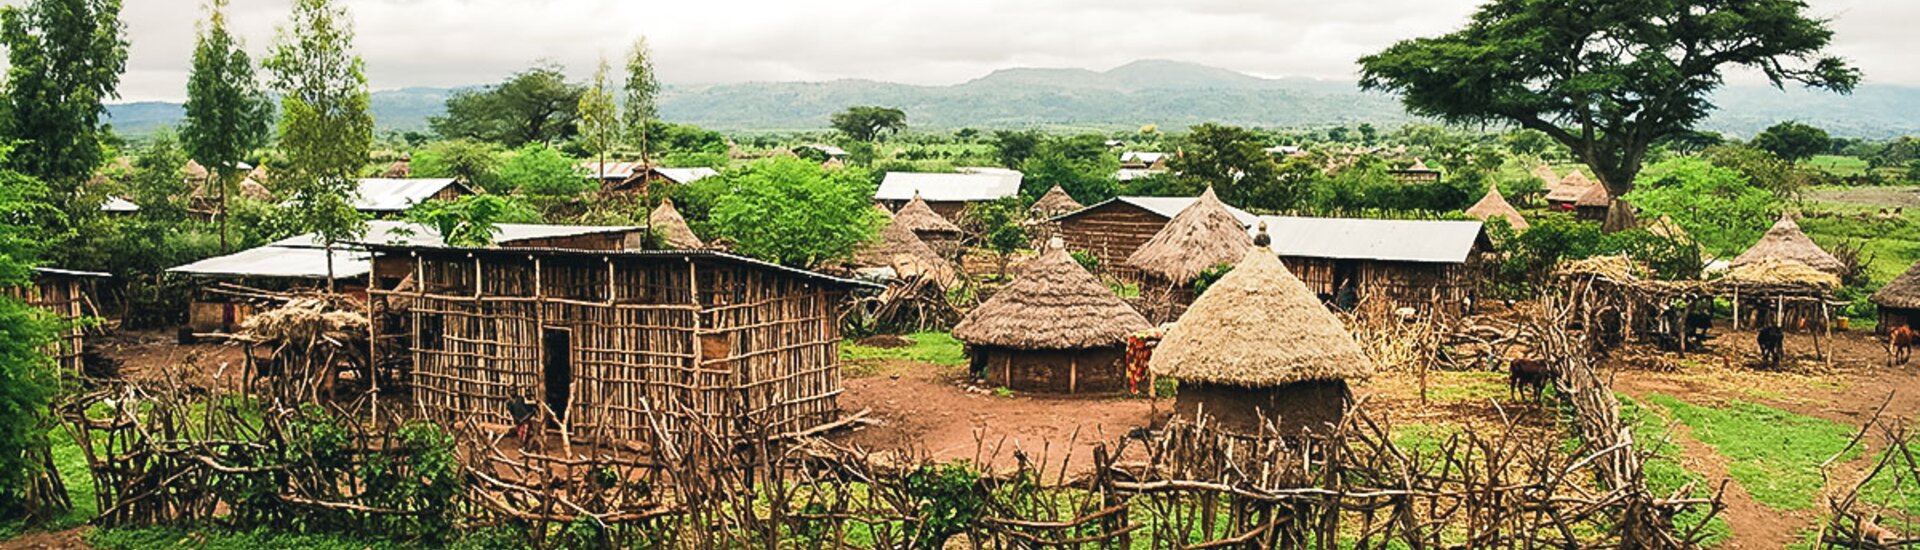 Konso Dorf in Äthiopien